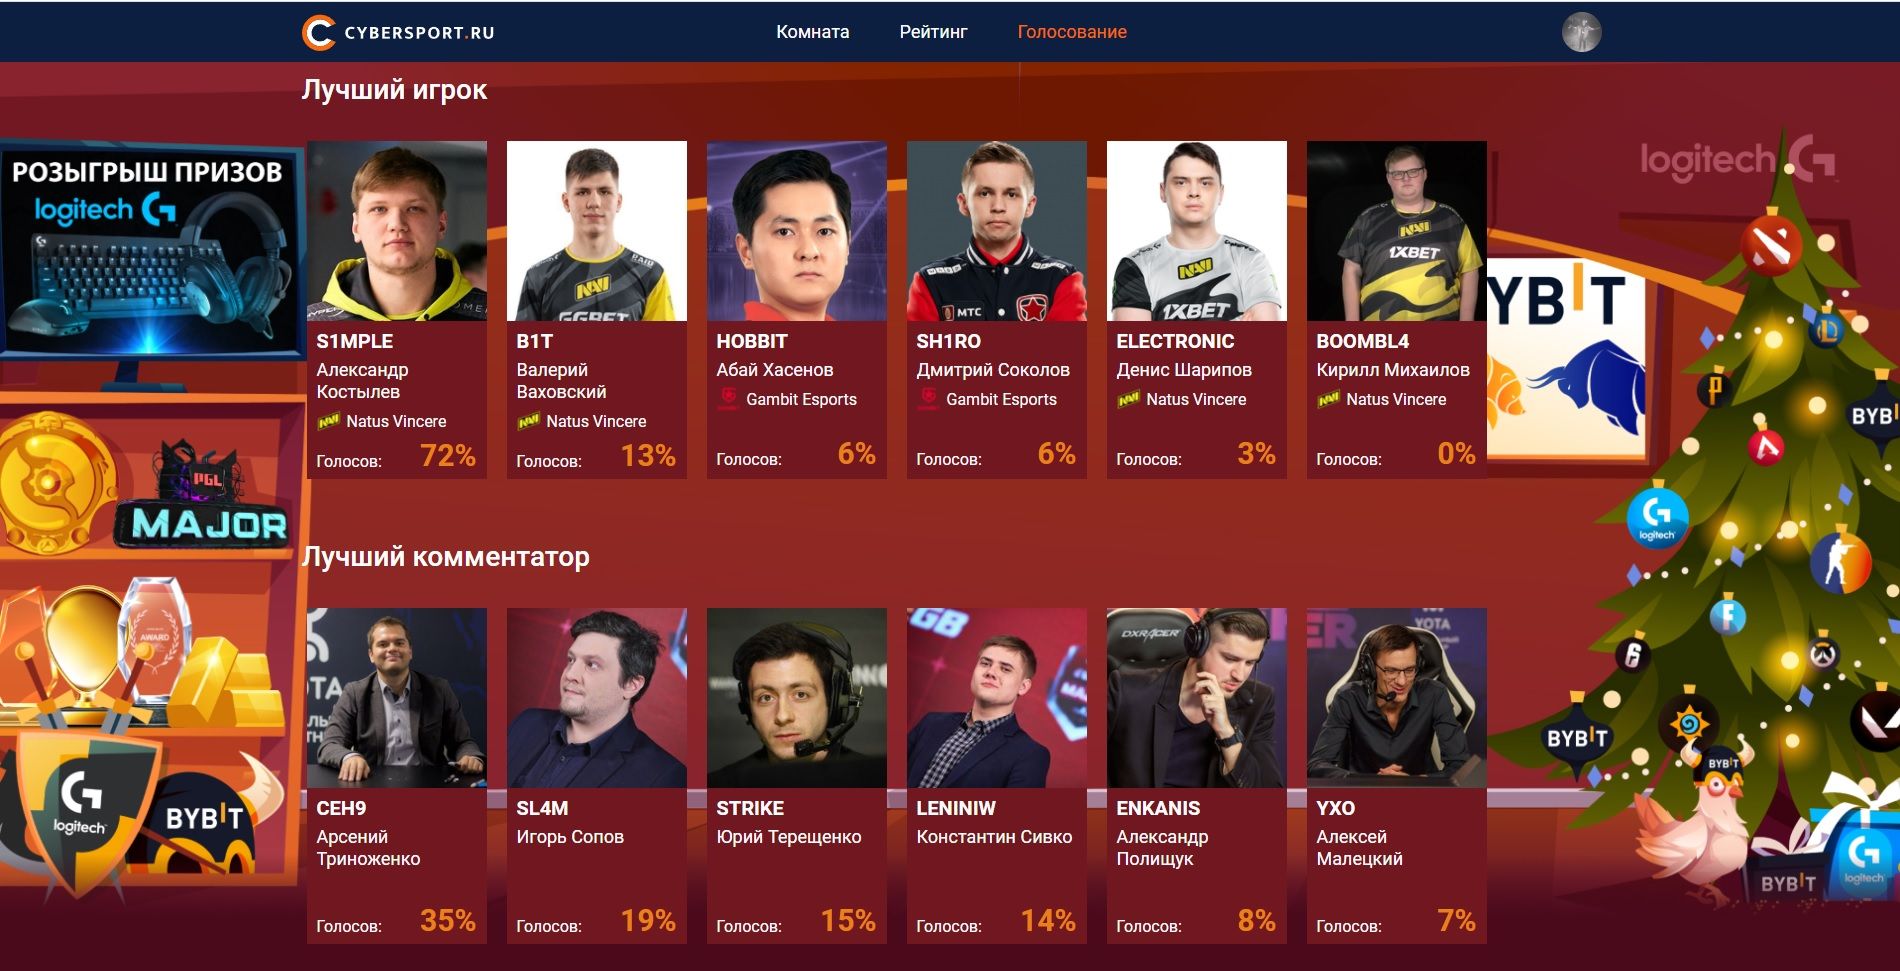 Итоги голосования читателей Cybersport.ru за звание лучшего игрока и комментатора 2021 года в CS:GO